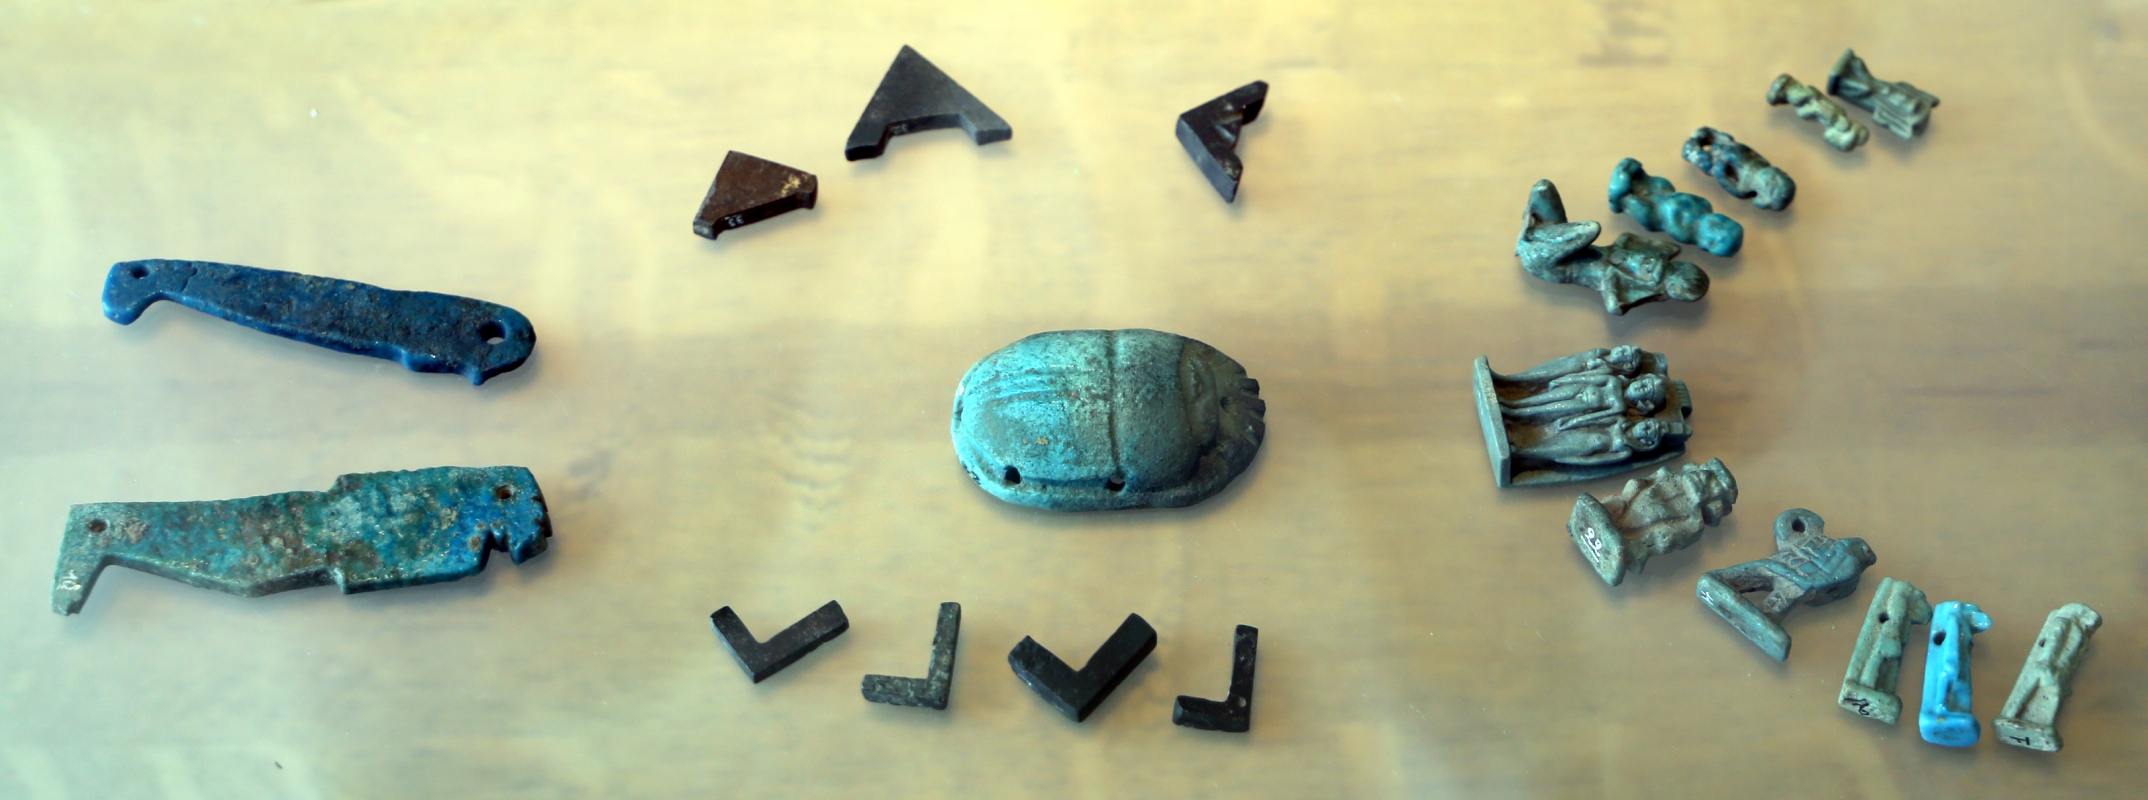 Epoca tolemaica, amuleti in faience, statuette e scarabeo - Sailko